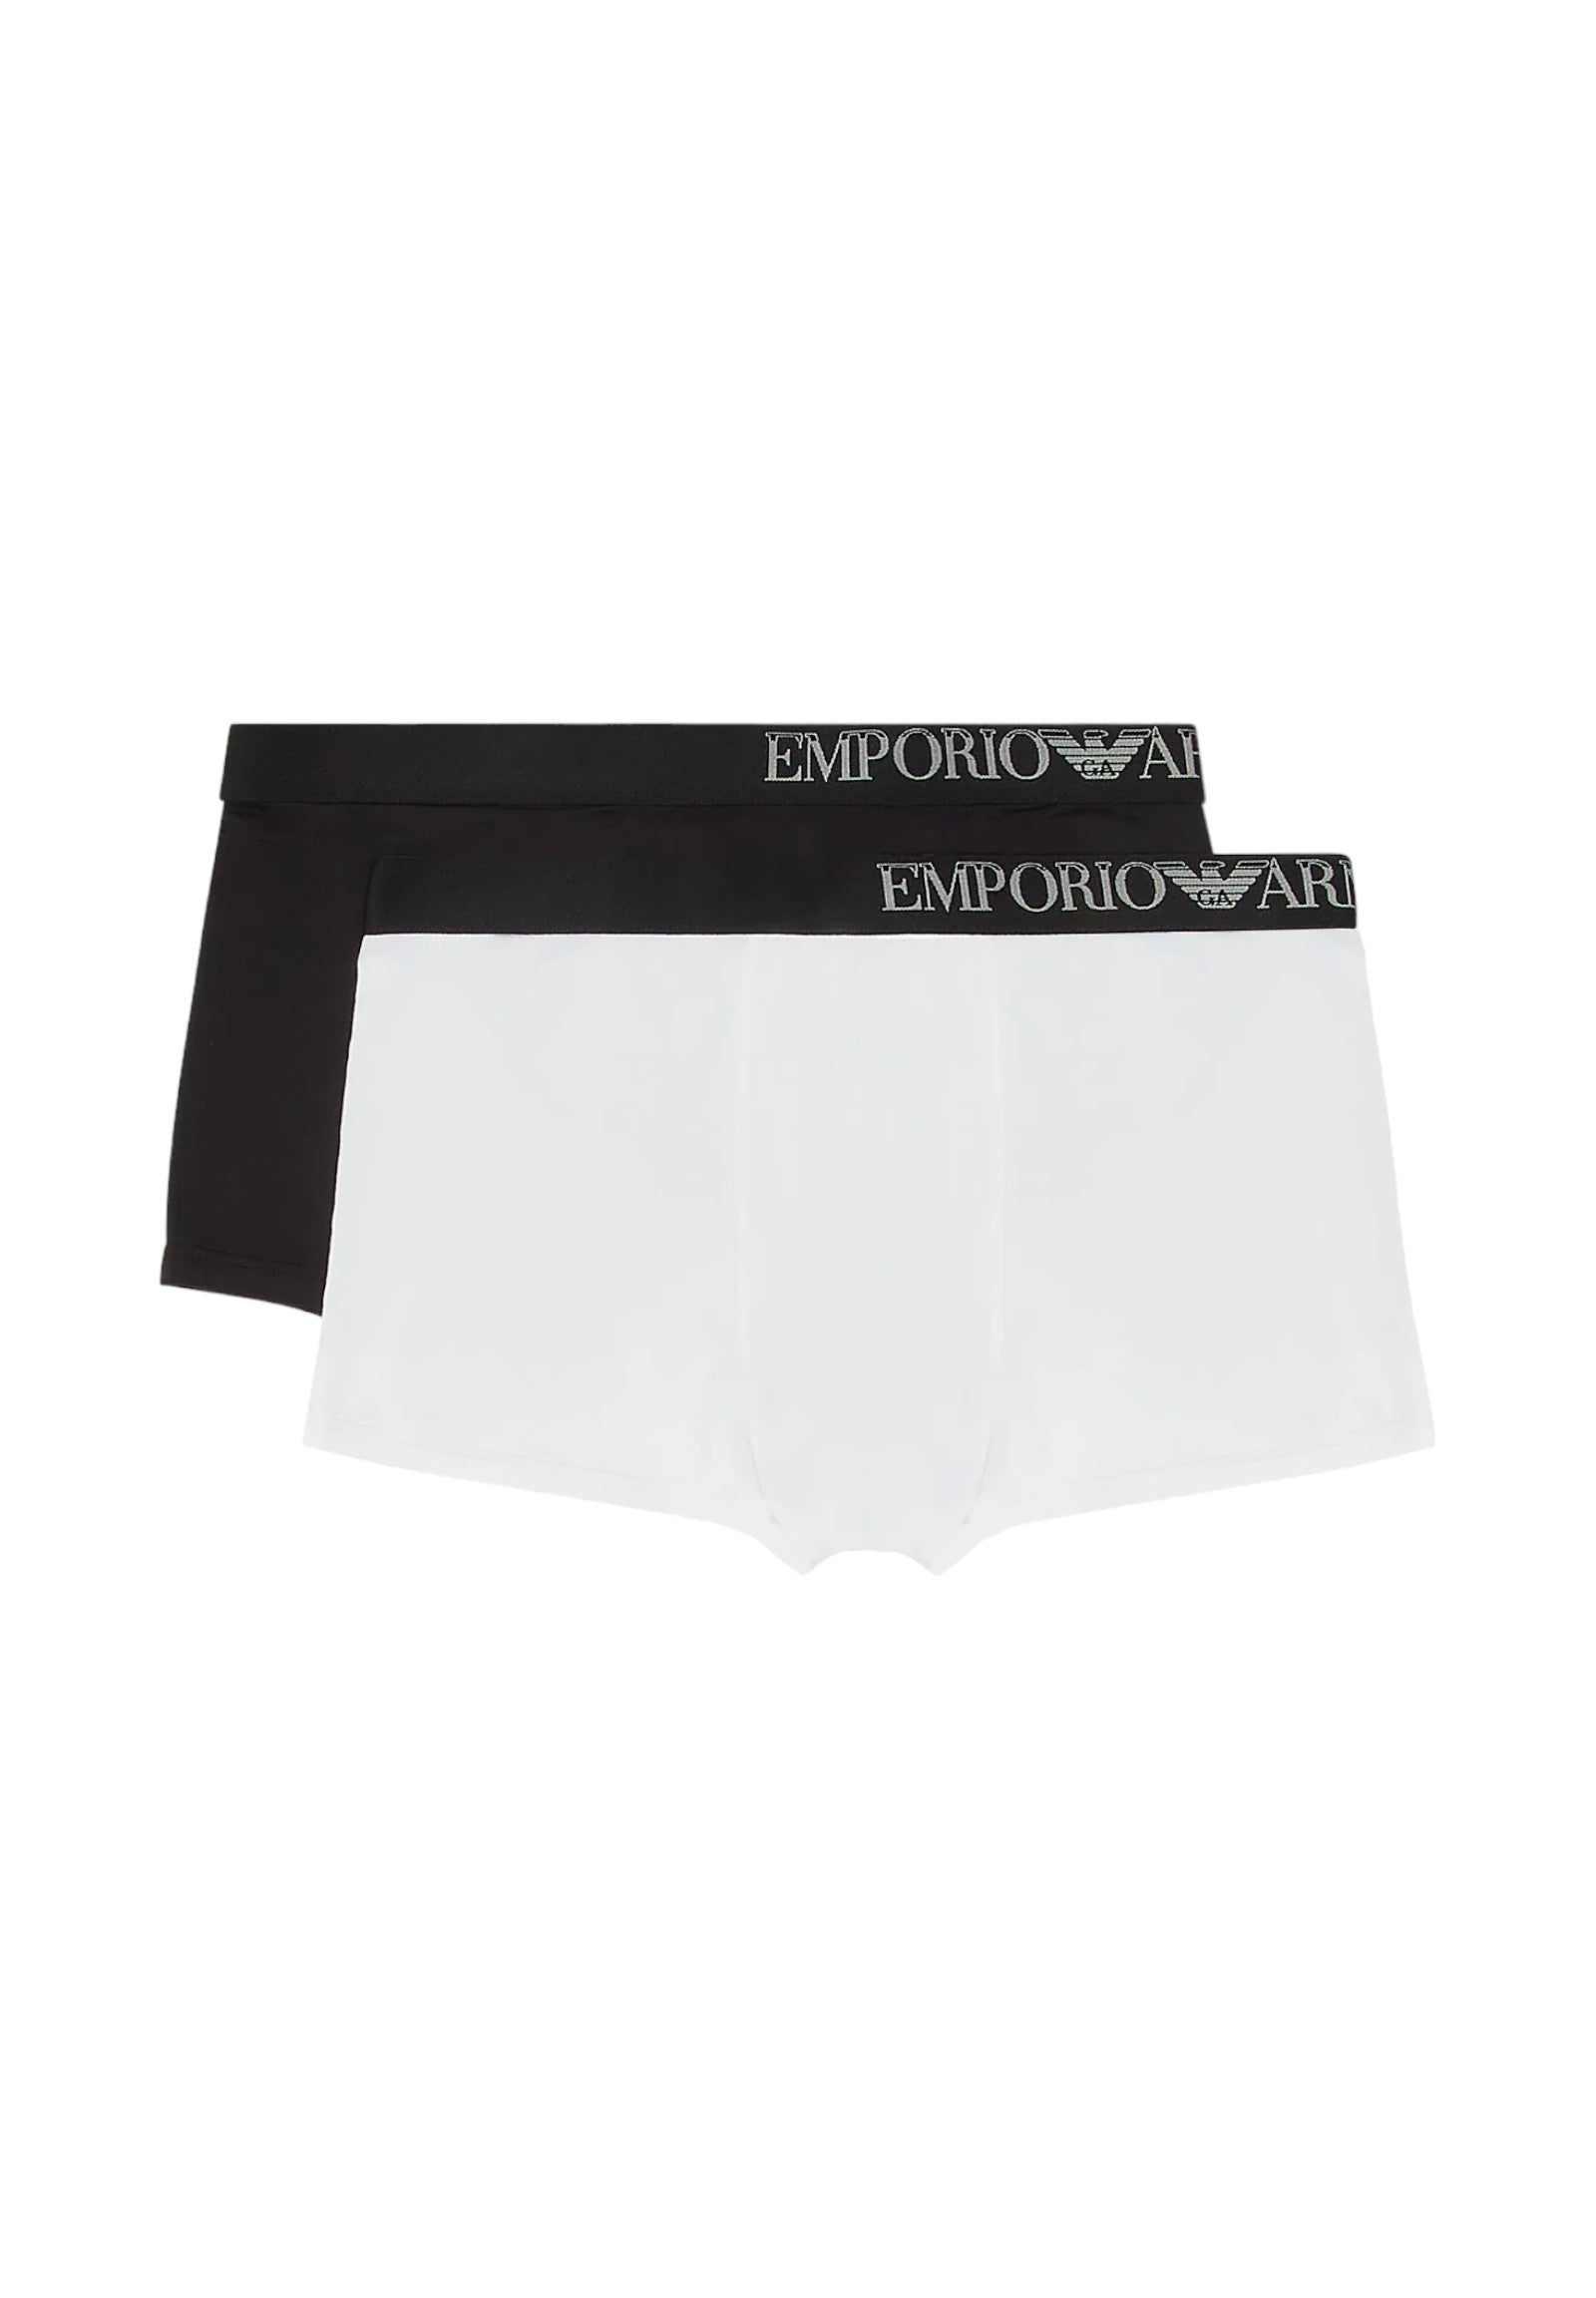 Underwear 111210 Black, White